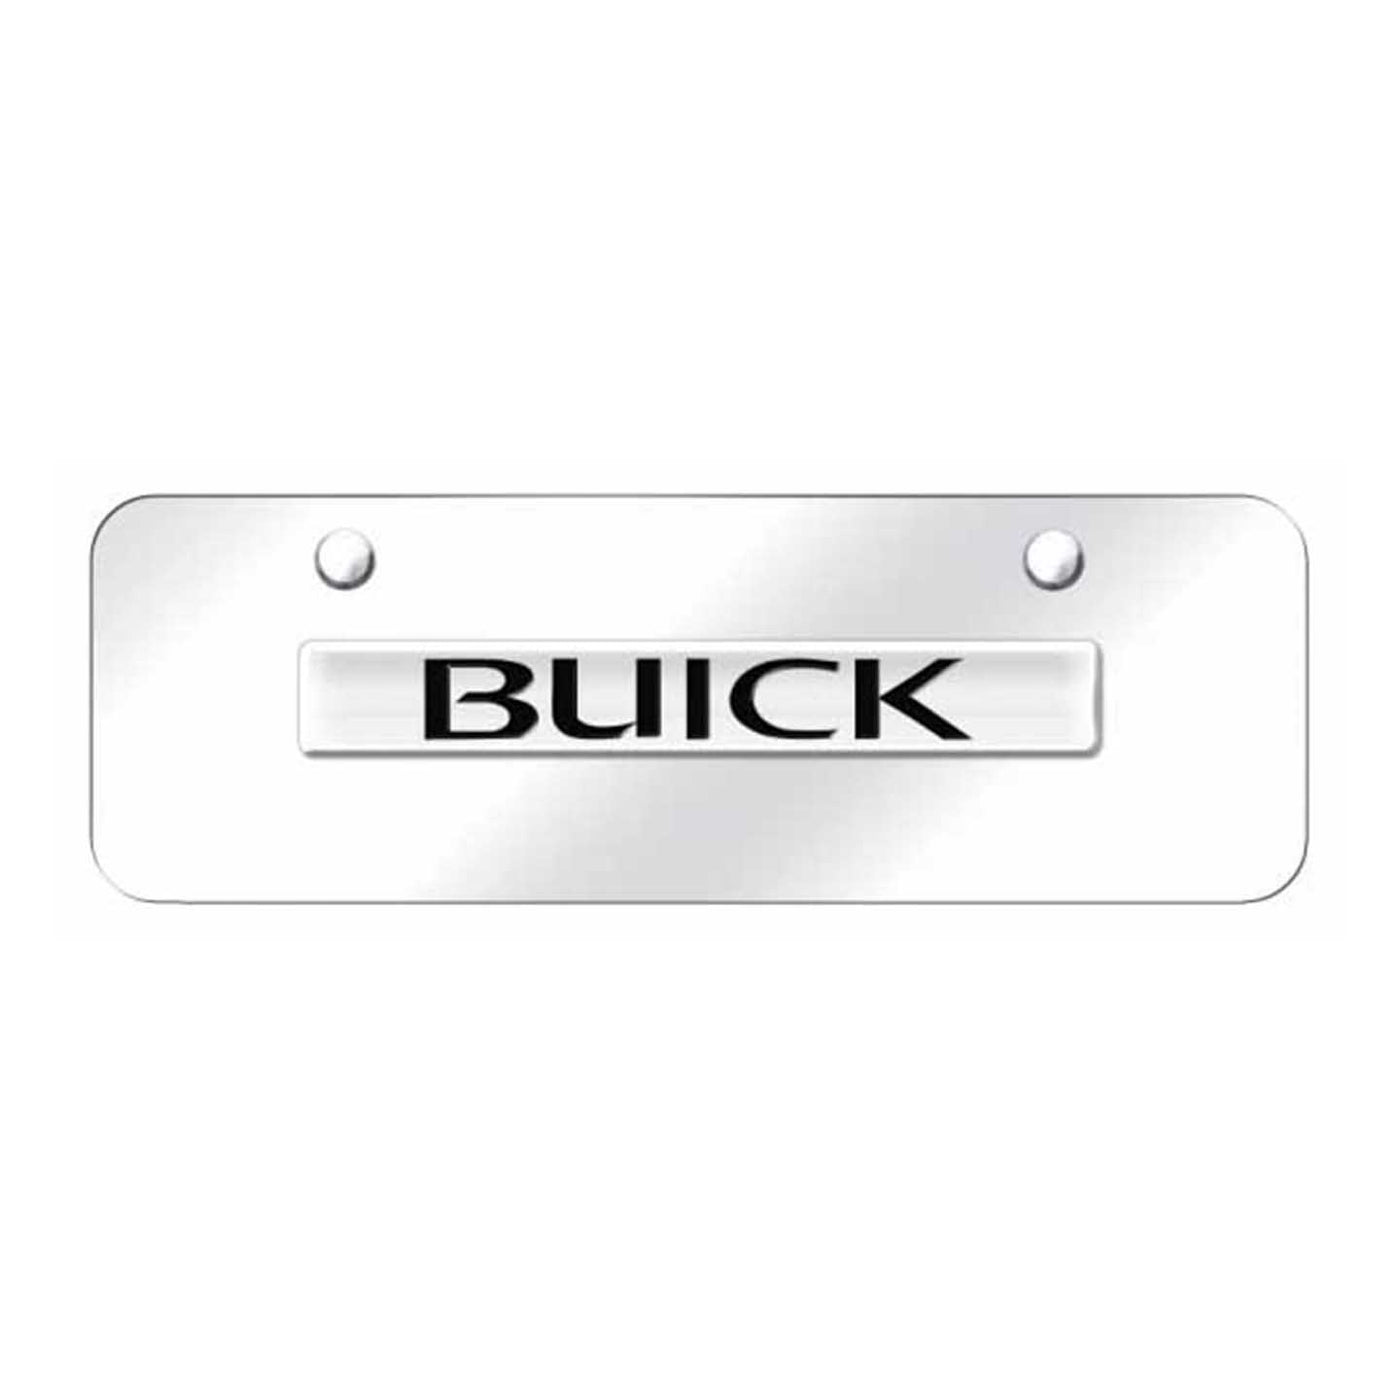 Buick Name Mini Plate - Chrome on Mirrored